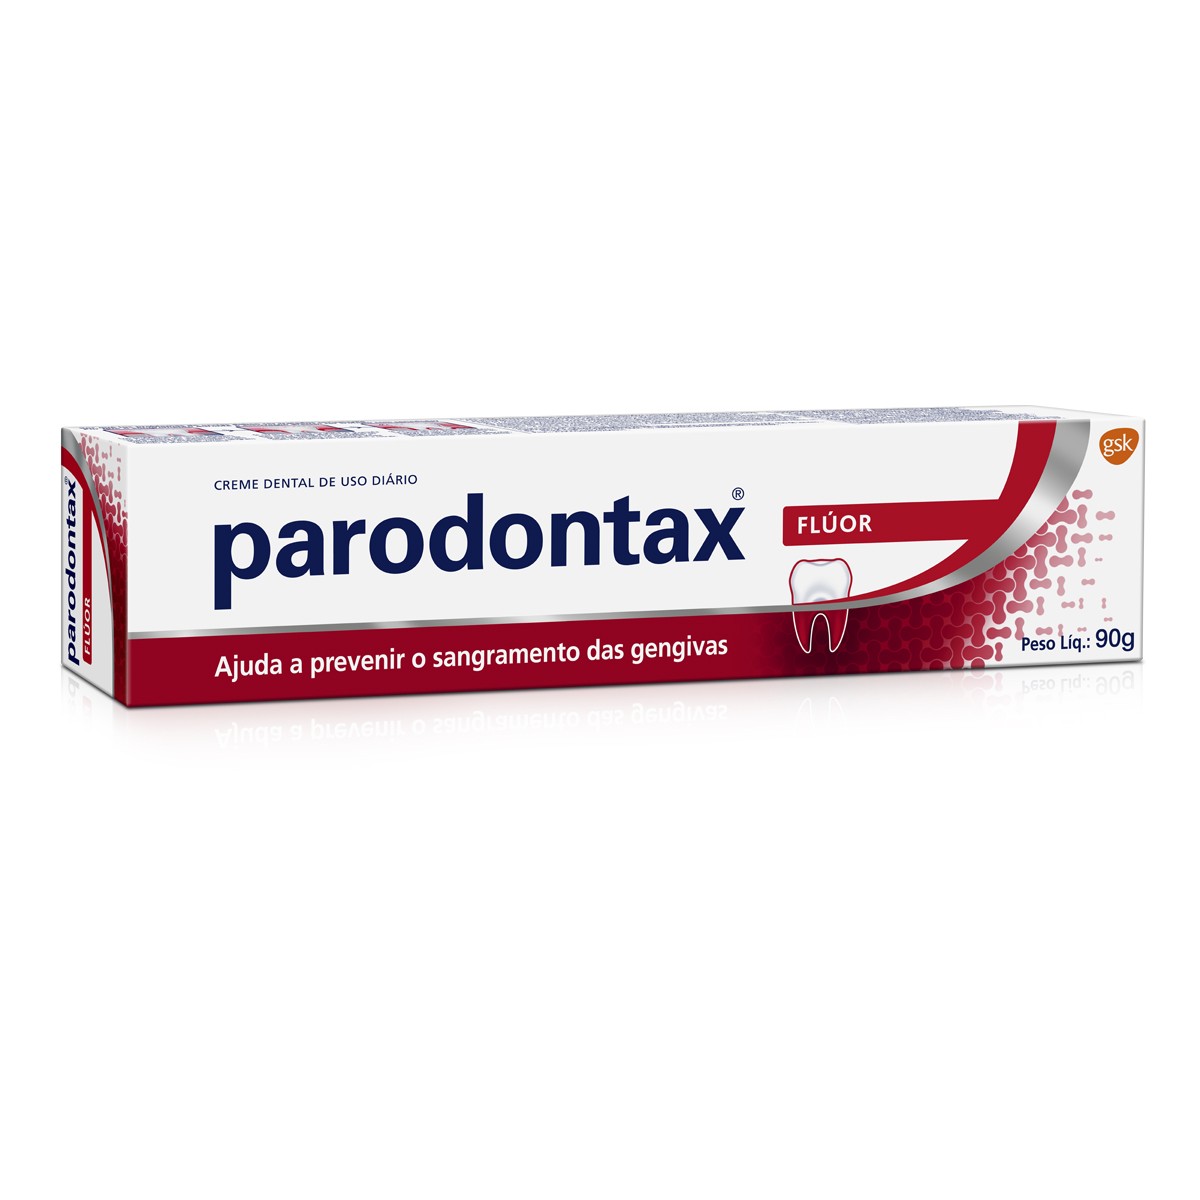 Creme Dental Parodontax Flúor para Prevenção do Sangramento das Gengivas 90g